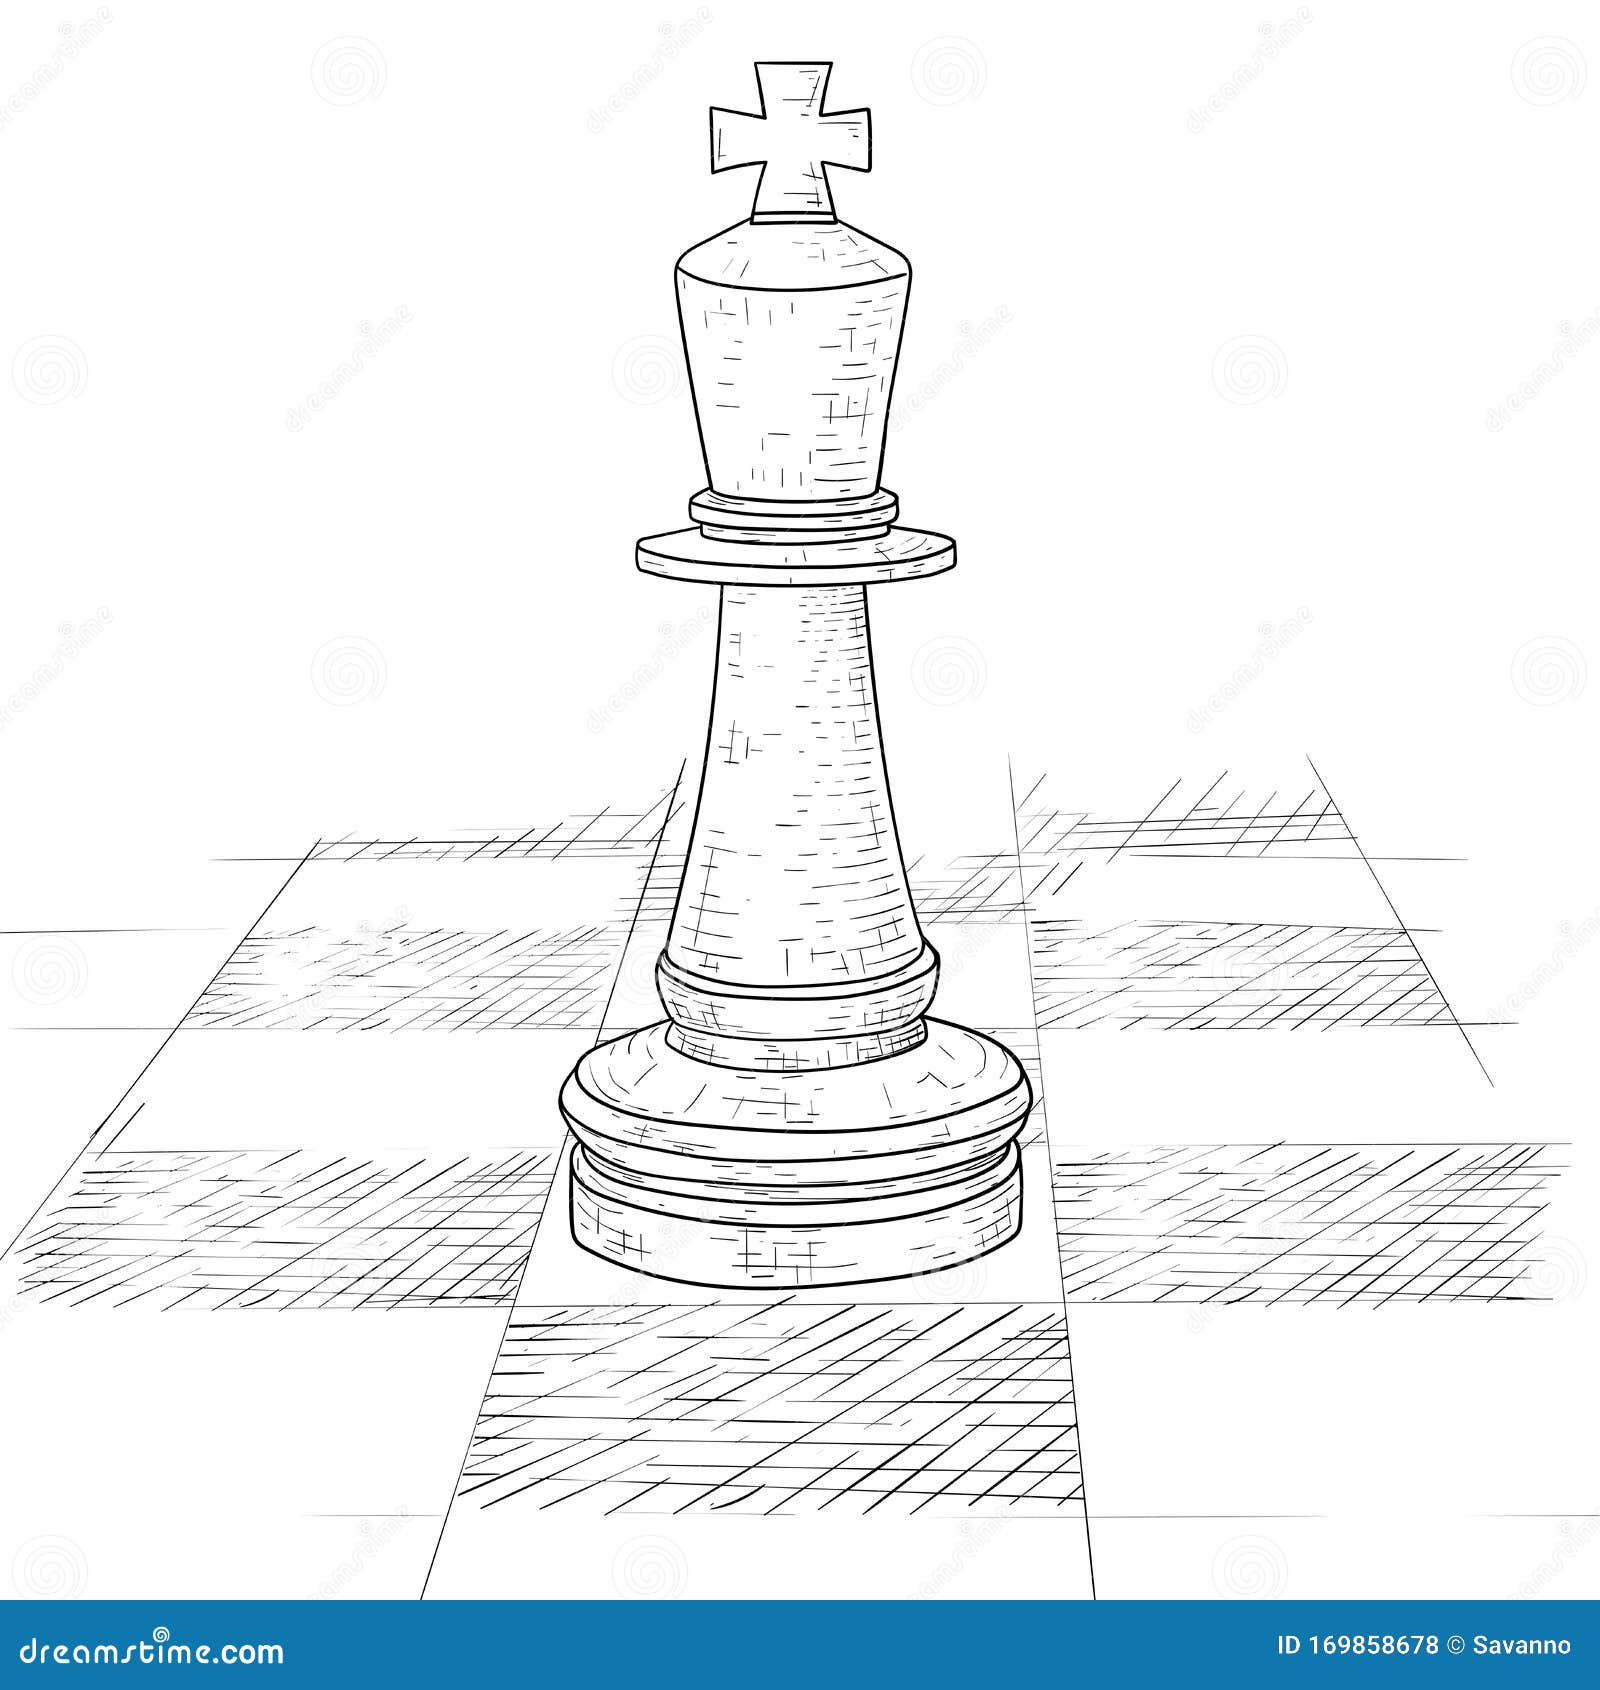 cinco peças de xadrez em estilo de desenho. ilustração vetorial desenhados  à mão. 10639663 Vetor no Vecteezy